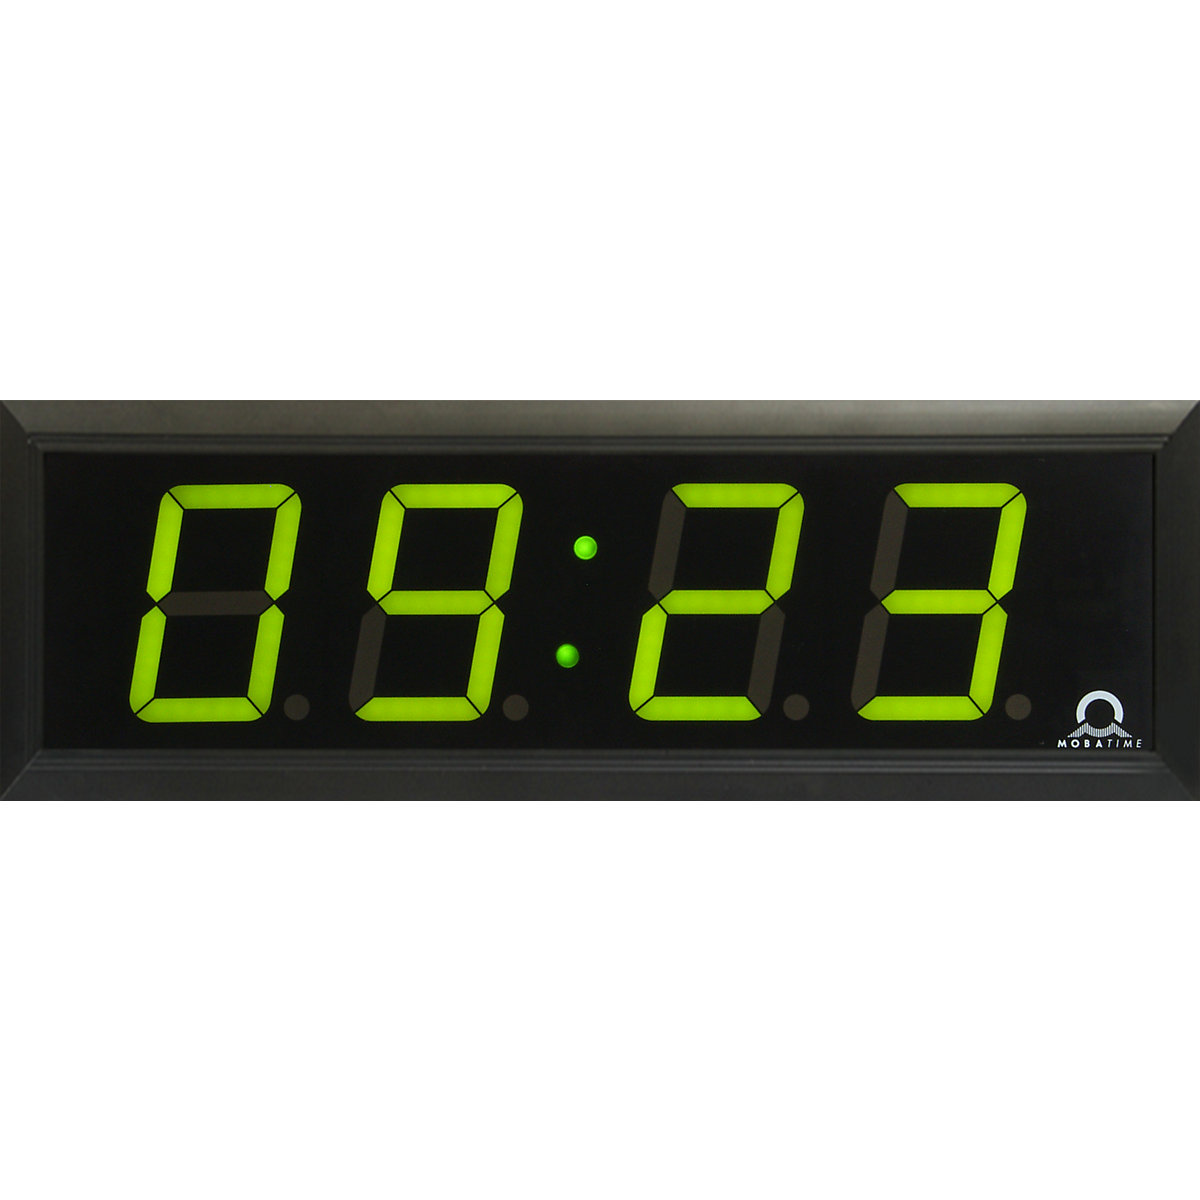 Zegar elektroniczny LED, wys. x szer. x głęb. 118 x 333 x 39 mm, czarny, zielone diody LED-3